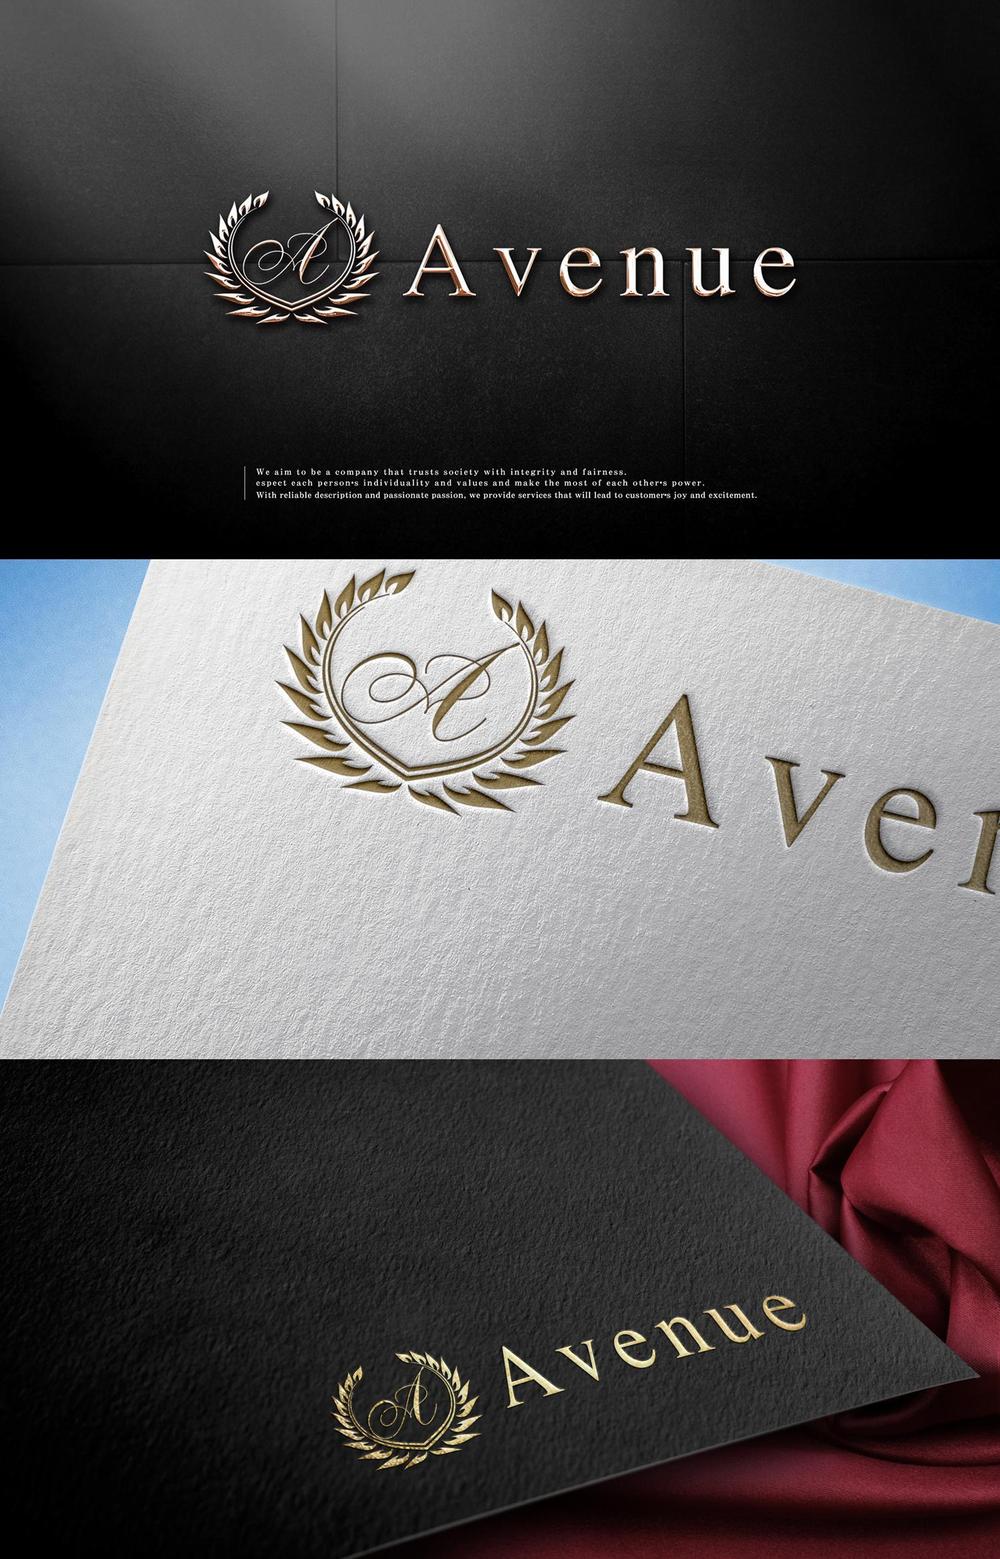 アクセサリーECサイト「Avenue」のロゴ